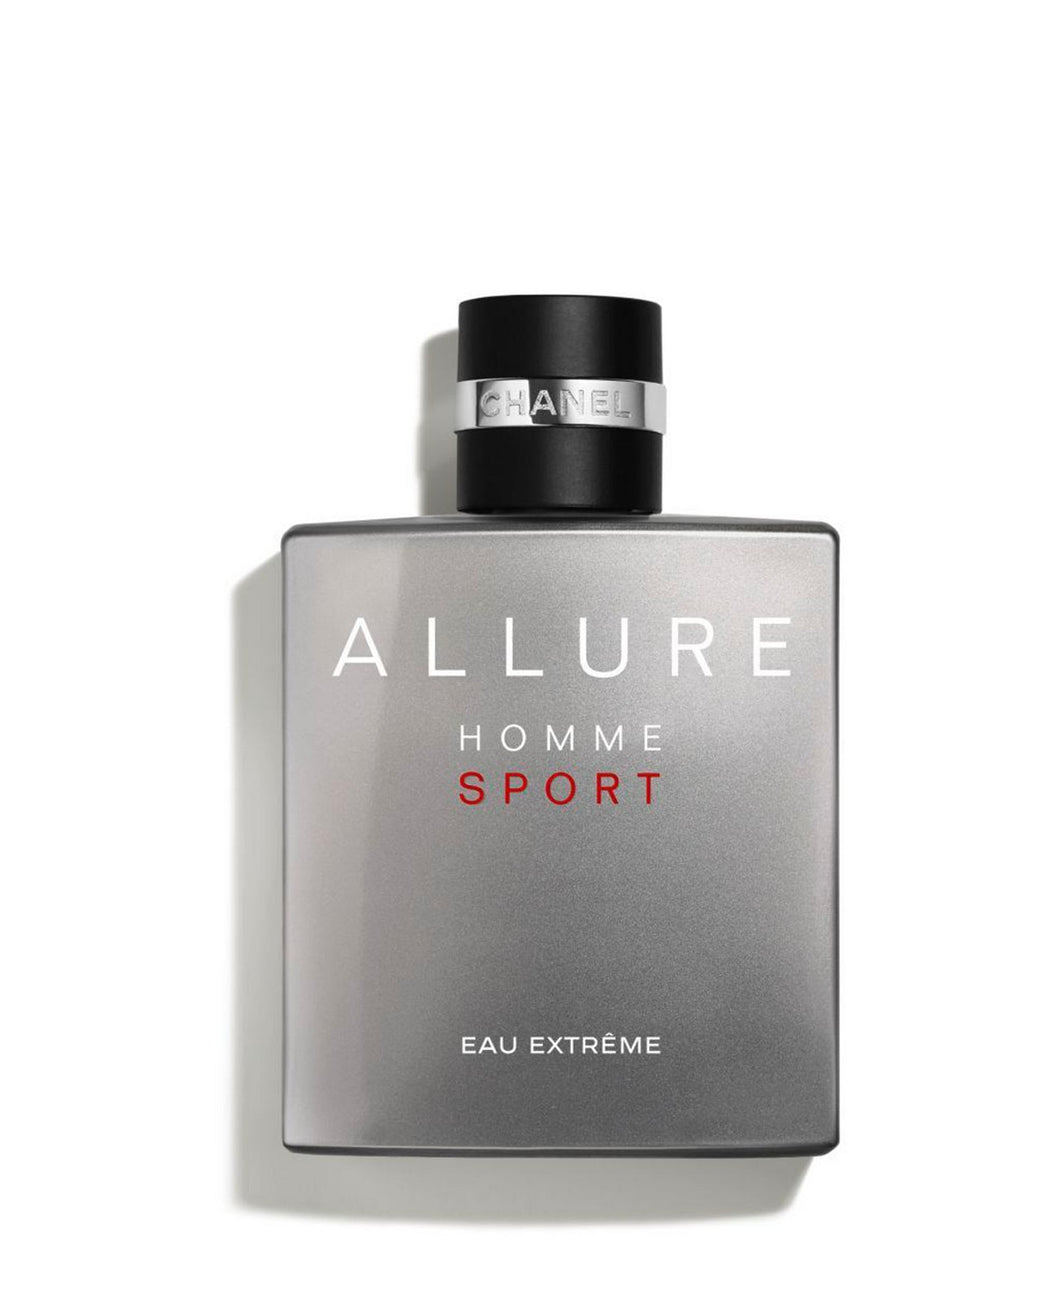 chanel Allure homme sport eau extreme eau de parfum 3.4oz - alwaysspecialgifts.com